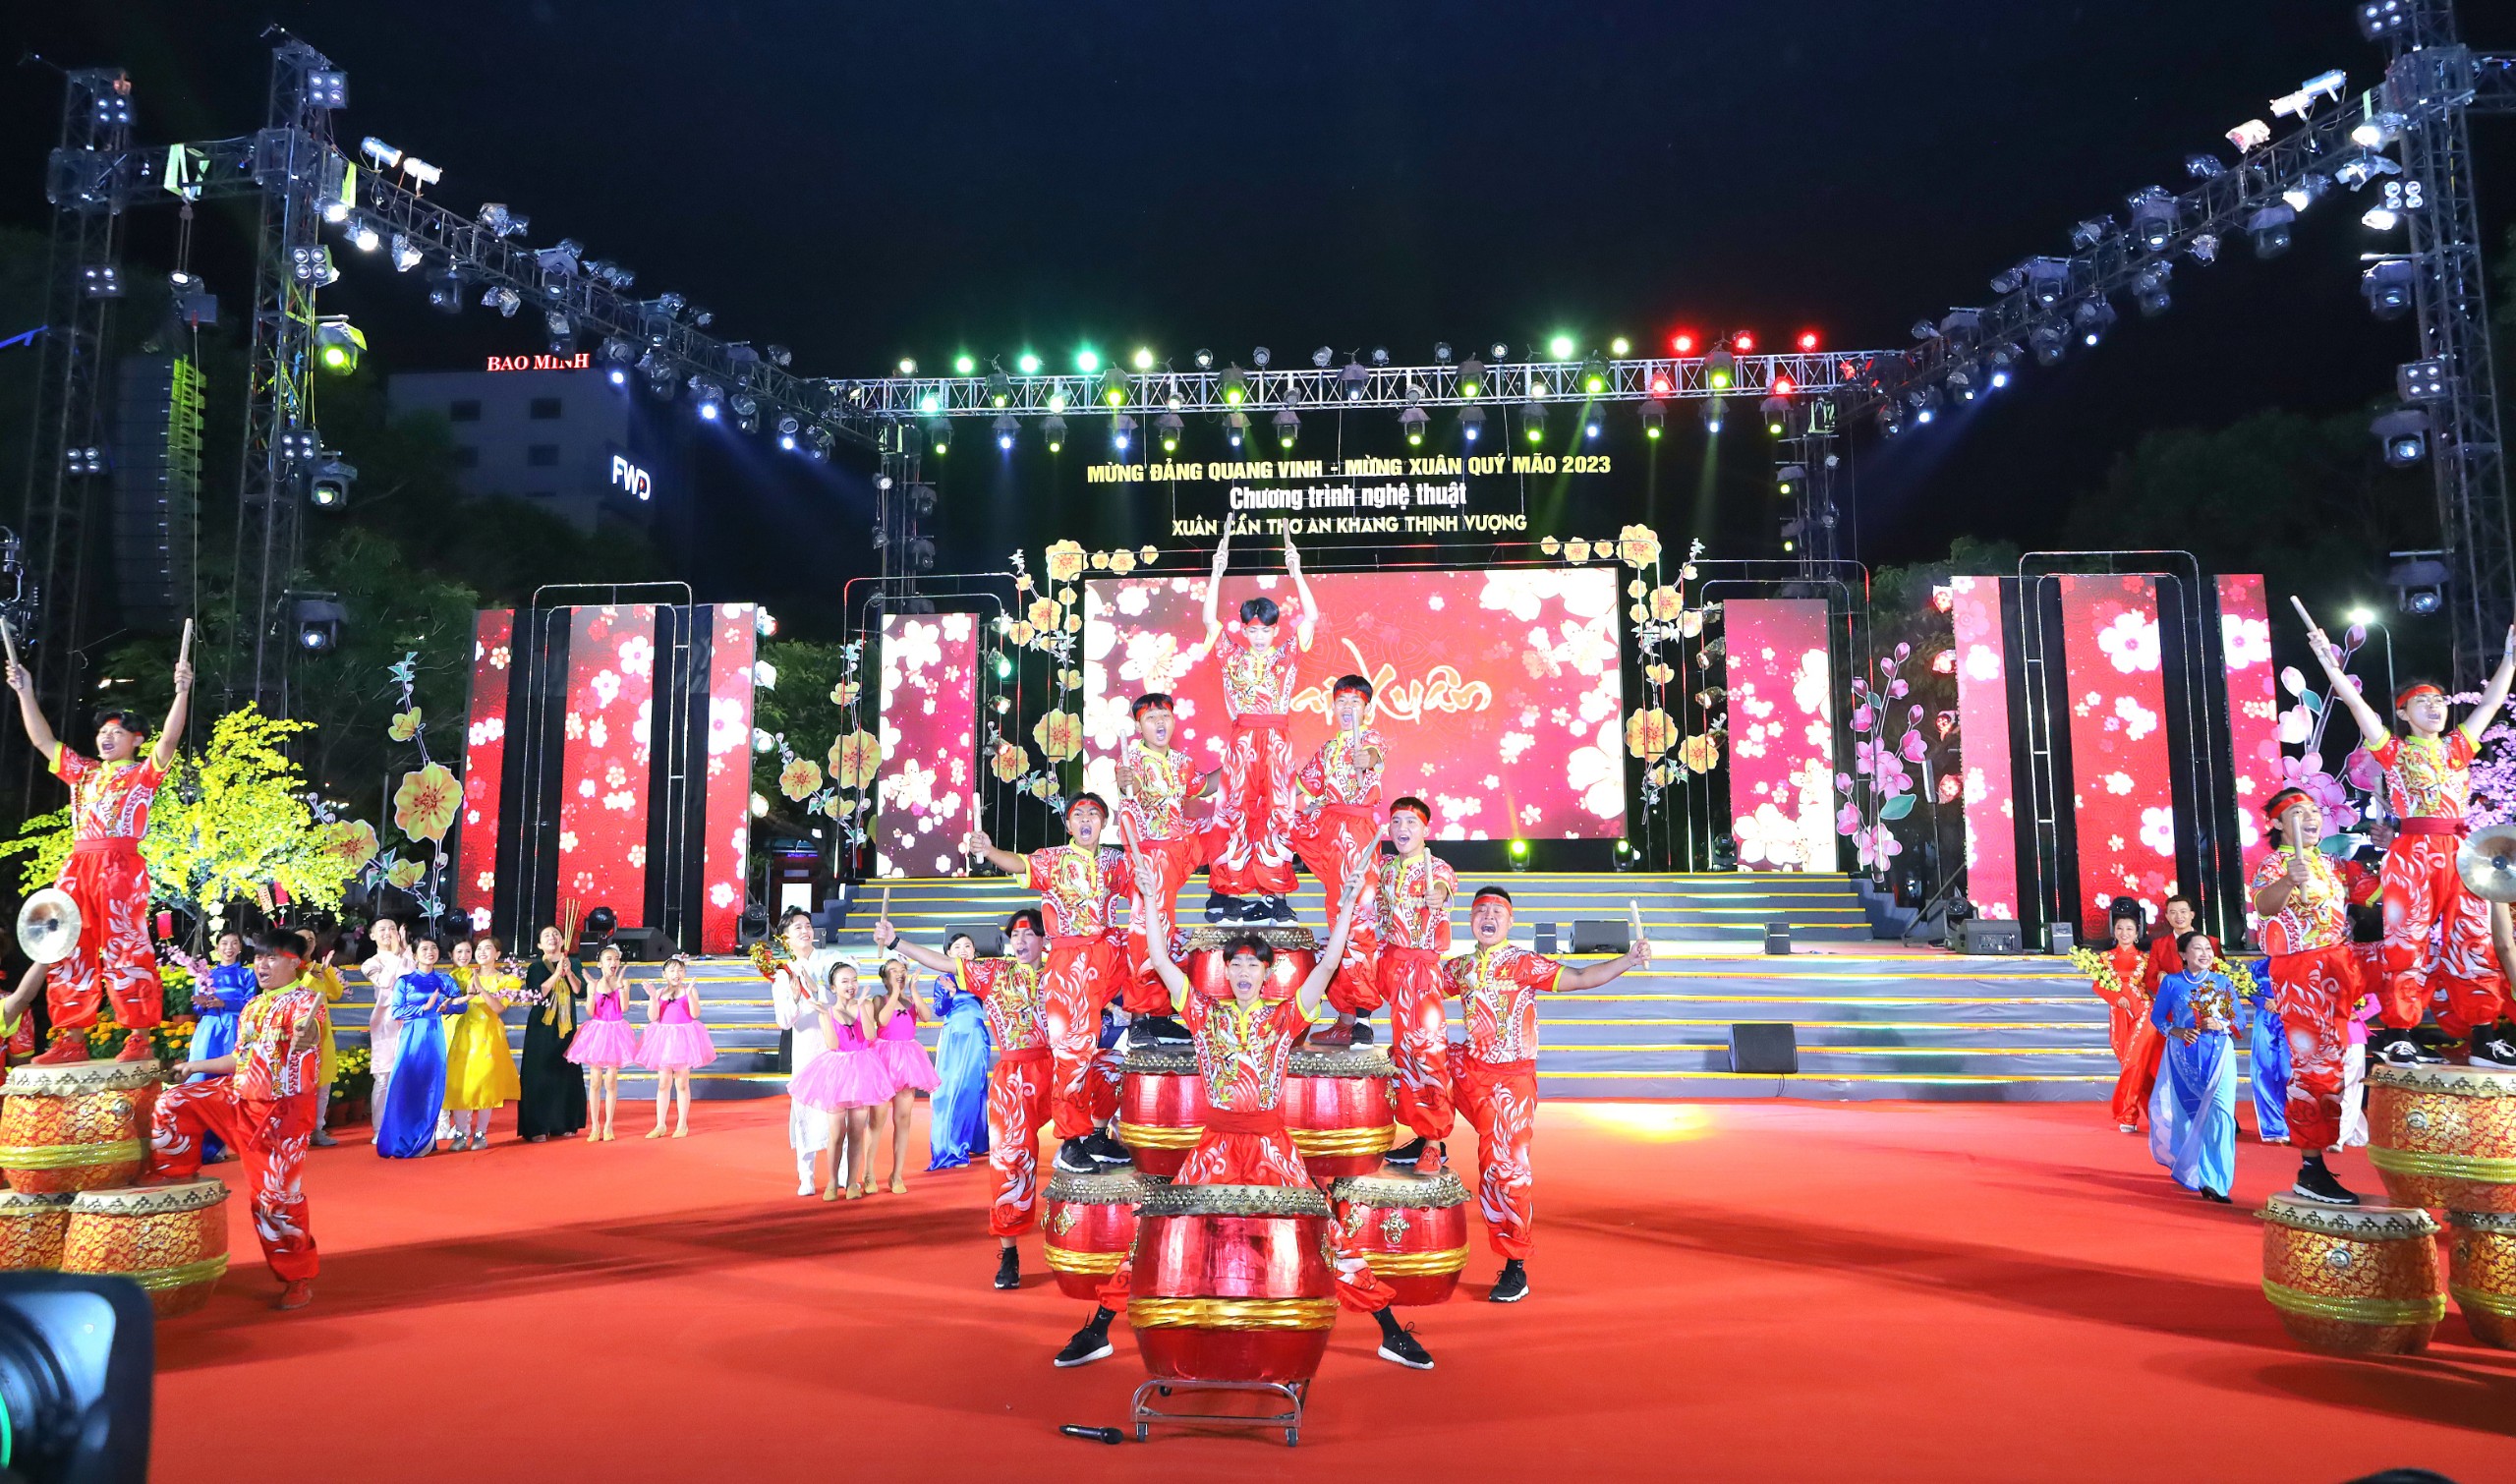 Mở màn chương trình là tiết mục “Trống hội khai xuân” do đội trống Lương Ấn Đường biểu diễn.